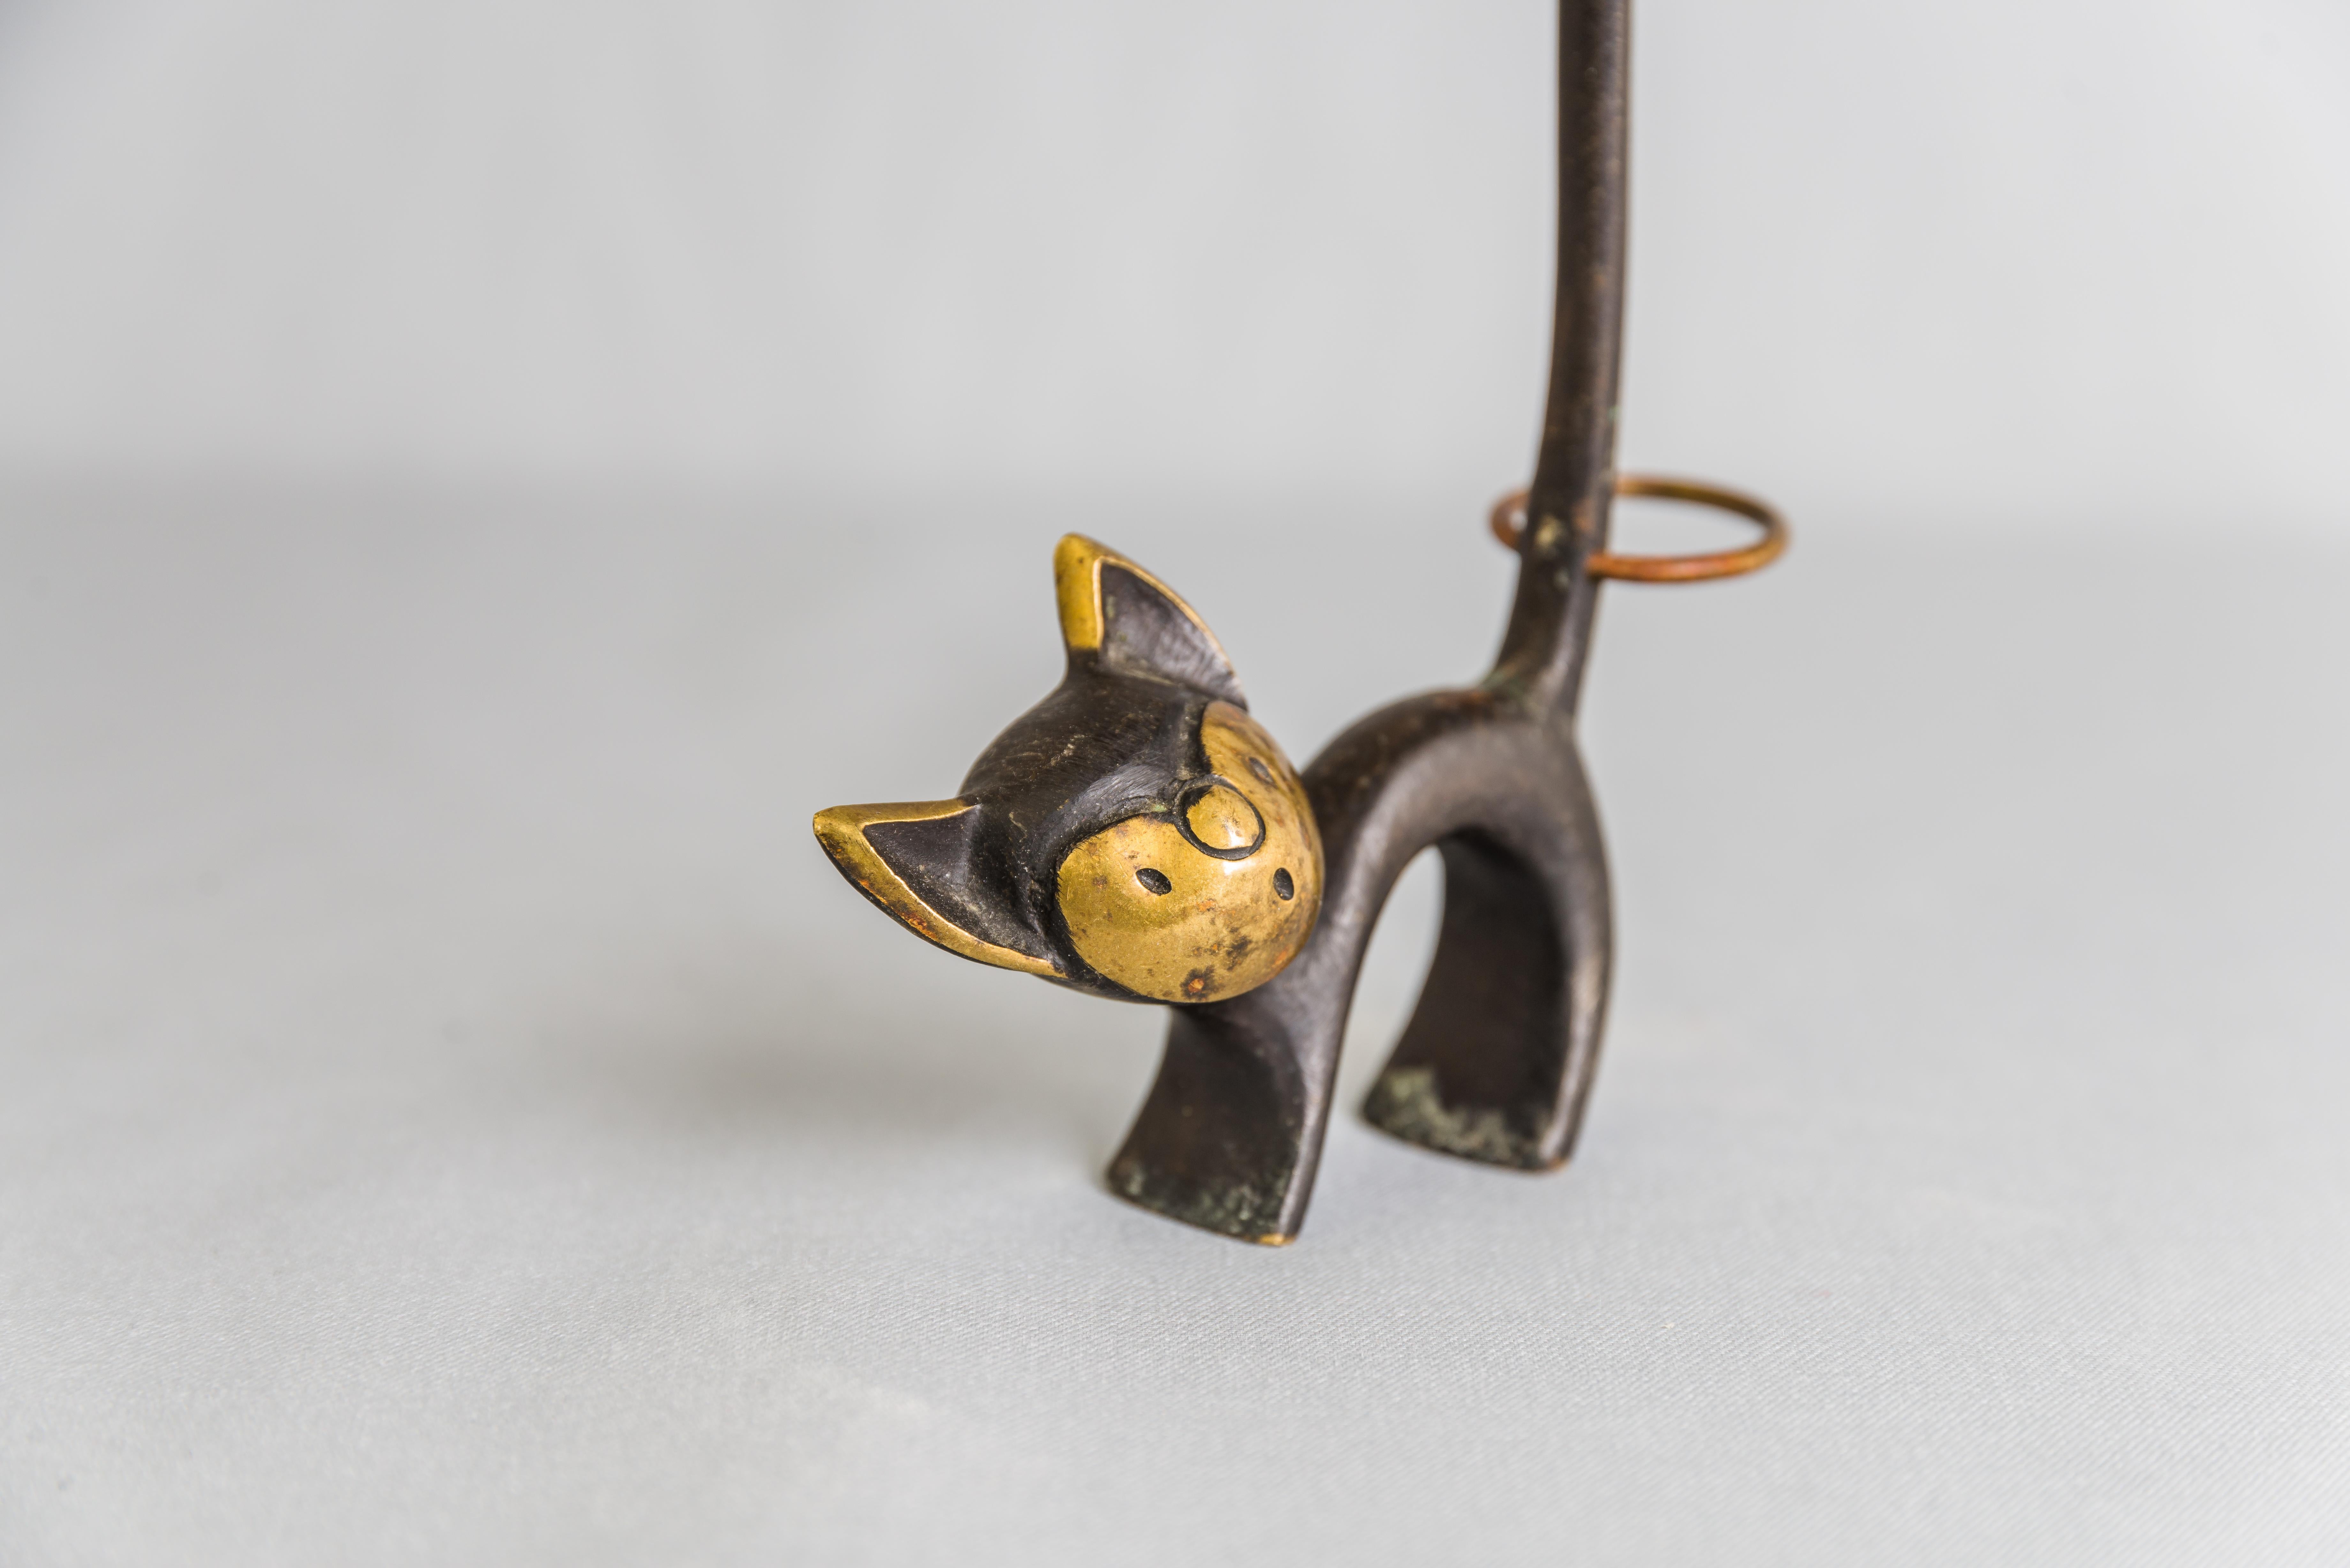 Österreichische Katzenfigur aus Messing, die normalerweise als Brezelhalter verwendet wird, ein dekoratives Stück, sehr gut geeignet als Ringhalter.
Ursprünglicher Zustand.